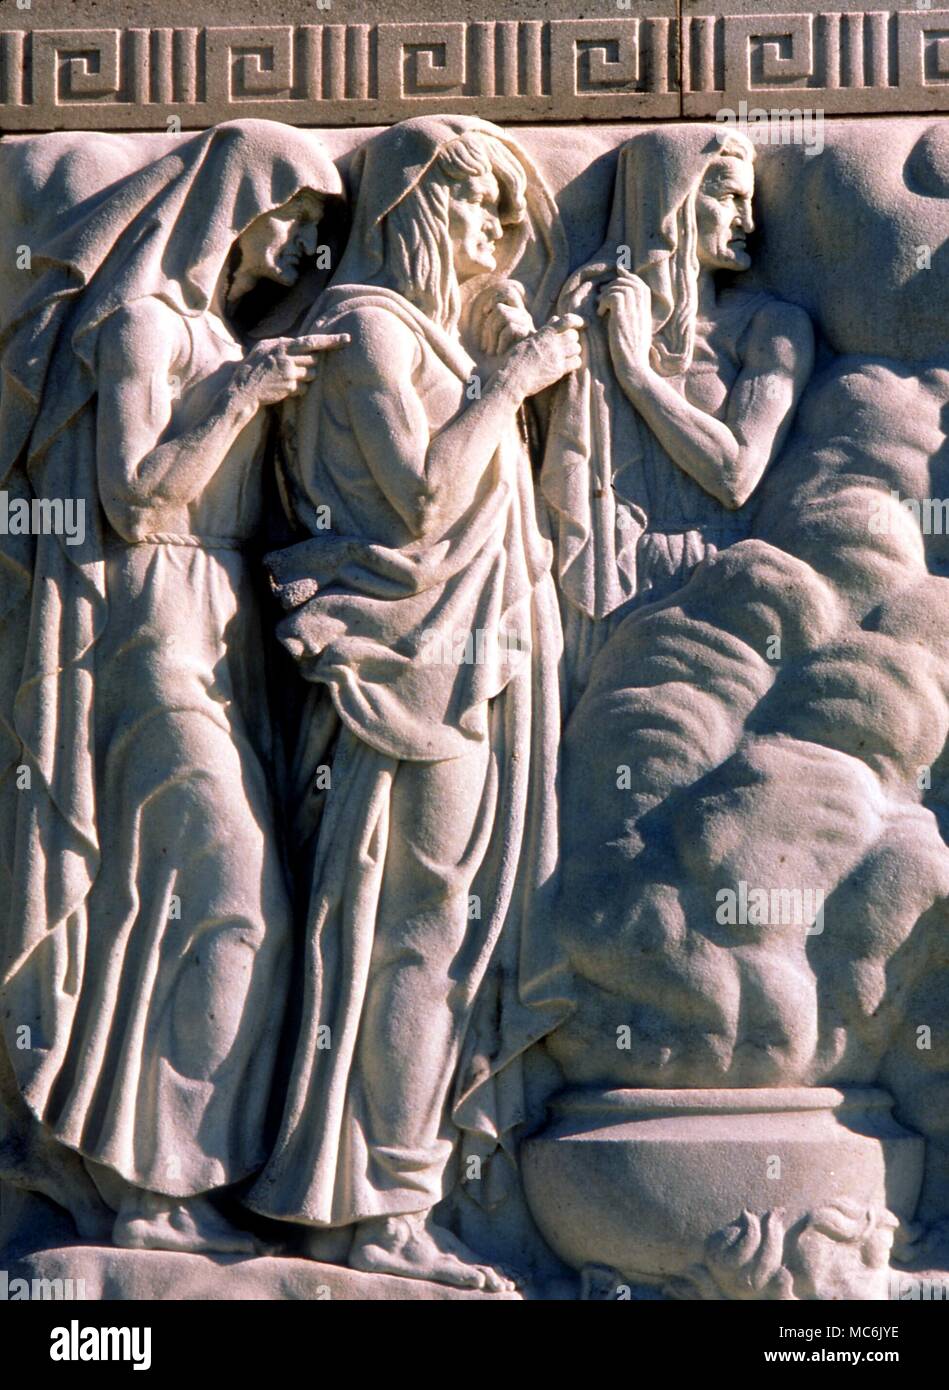 Hexerei - Hexen von macbeth Die drei "Weird Sisters", die Macbeth auf die verwüsteten Heide treffen. Skulptur an der Fassade der Folger Shakespeare Memorial Library in Washington DC. Von John Gregory, 1932 geformt Stockfoto